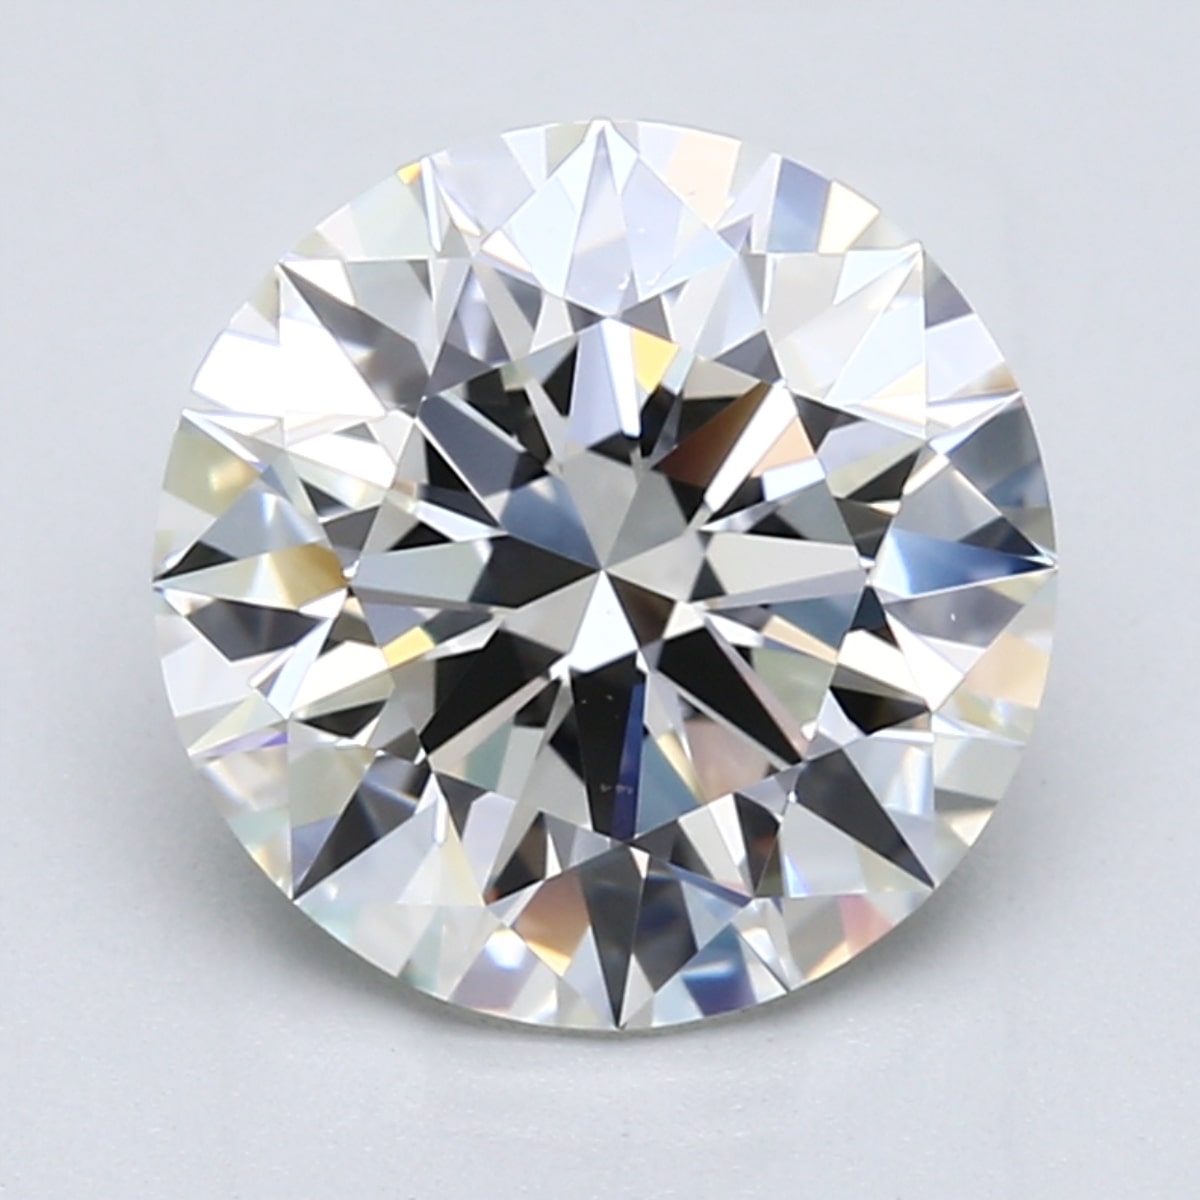 4 carat H color diamond